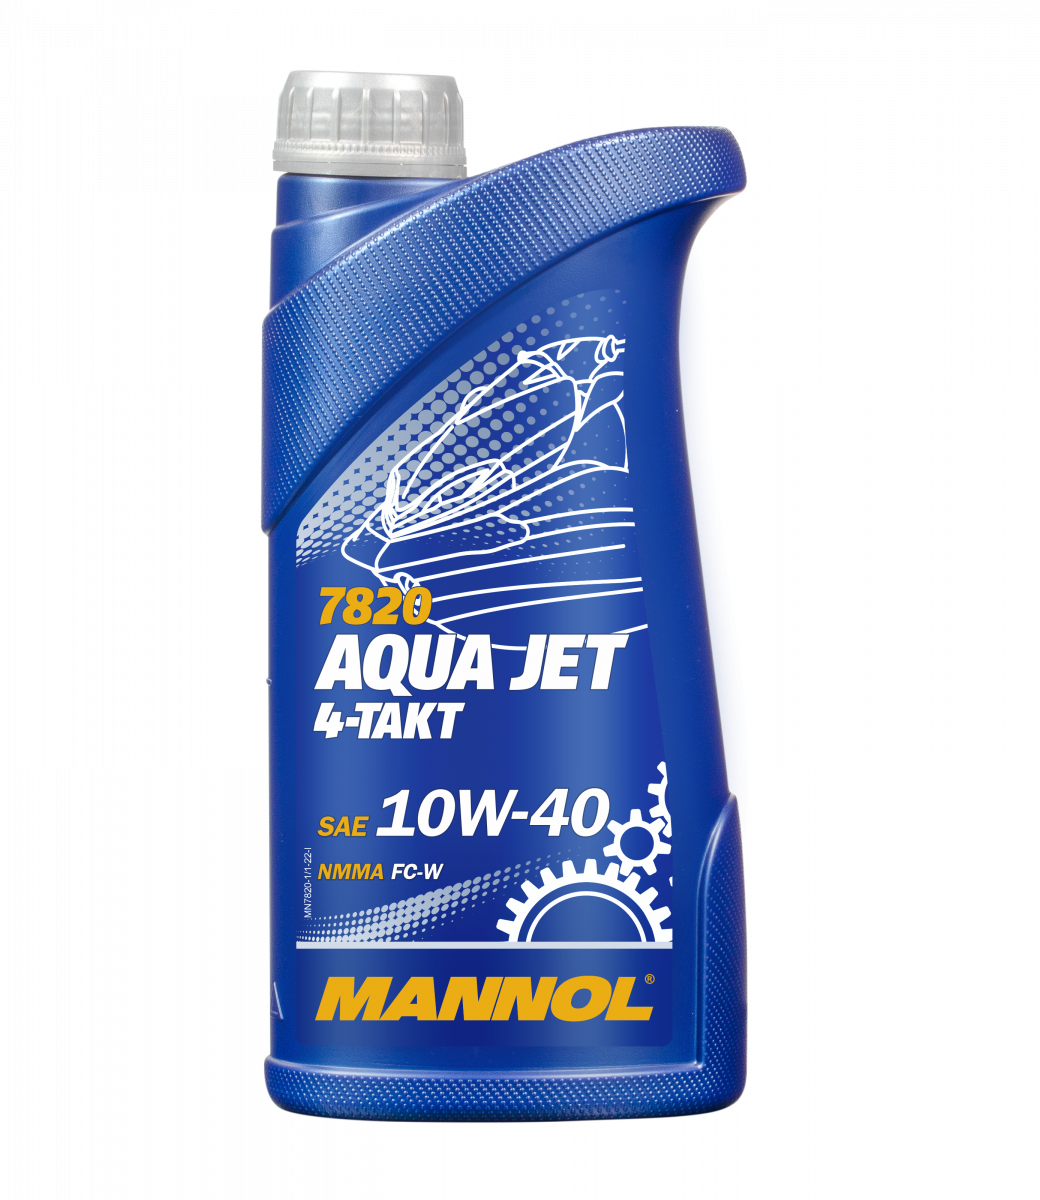 10W-40 Mannol 7820 4-Takt Aqua Jet Motoröl 1 Liter